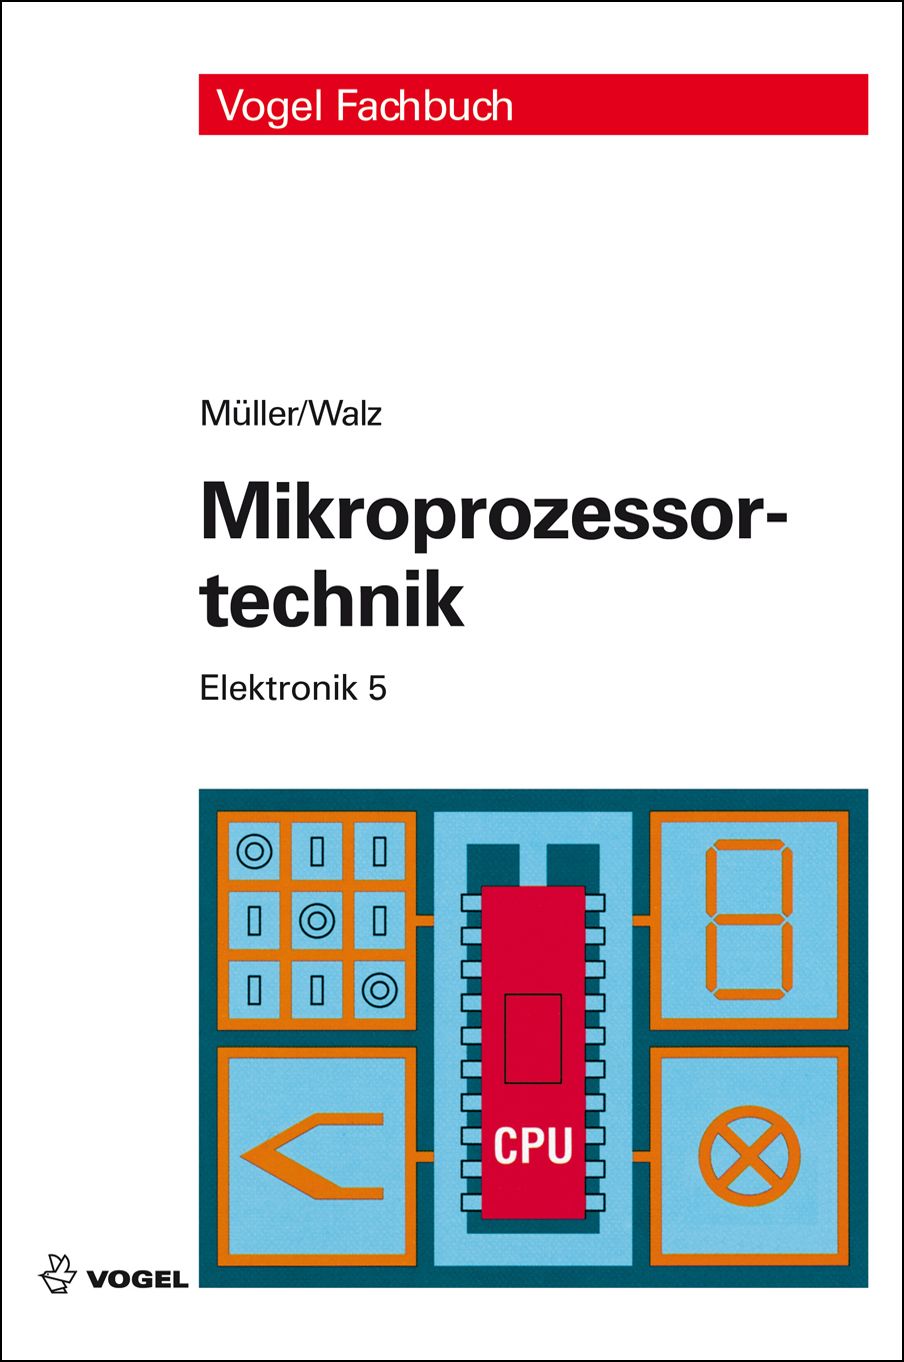 Das Fachbuch "Elektronik 5: Mikroprozessortechnik" von Helmut Müller und Lothar Walz 